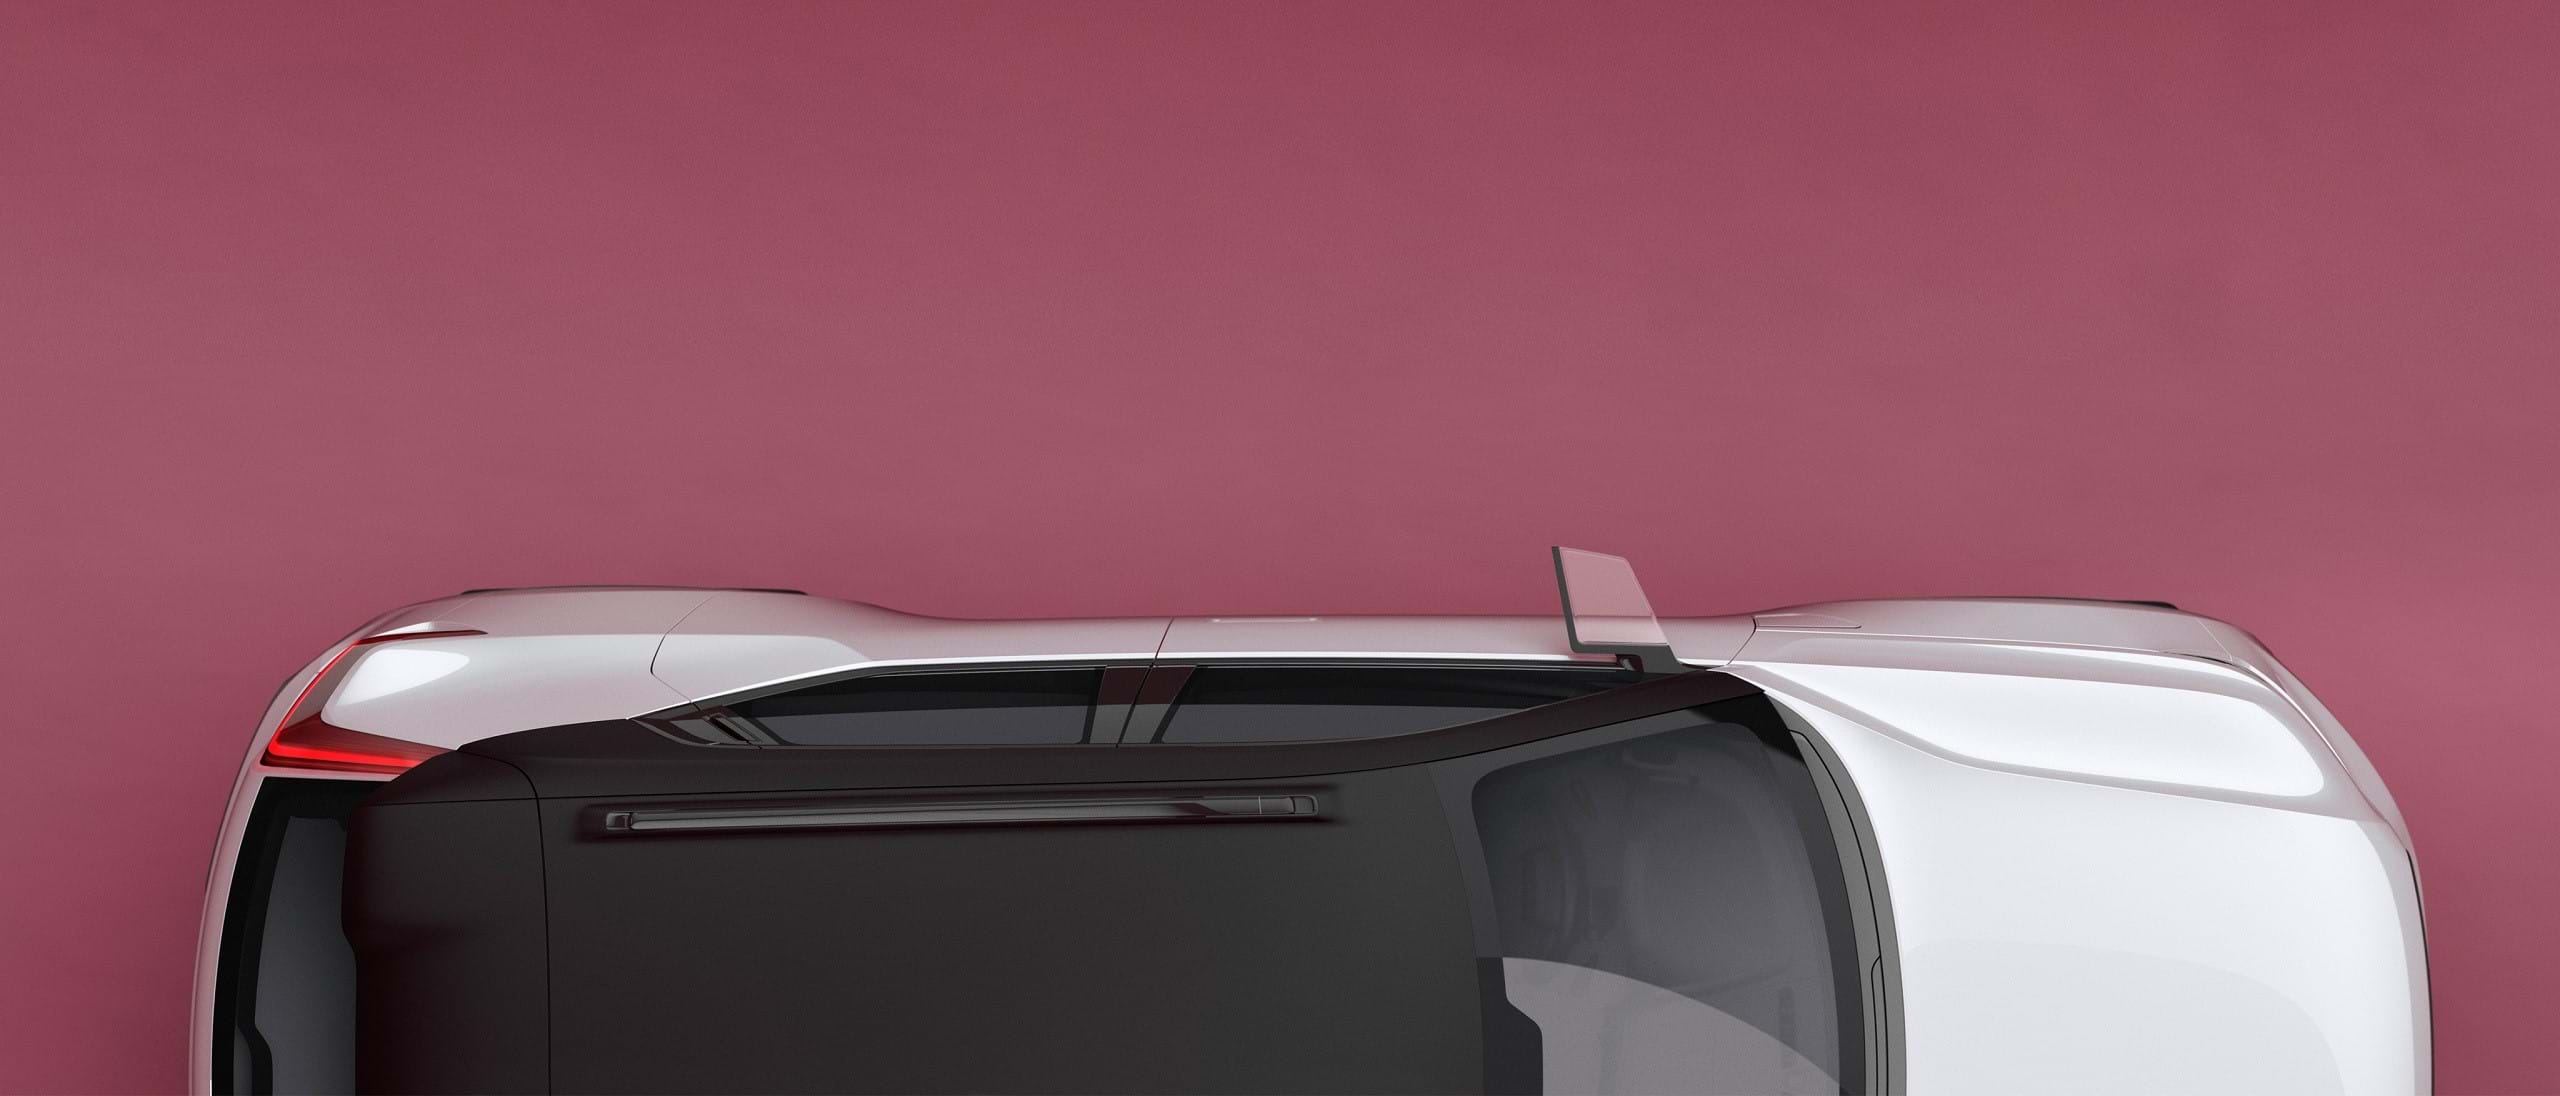 Pogled odozgo na beli Volvo Koncept 40 sa crnim krovom